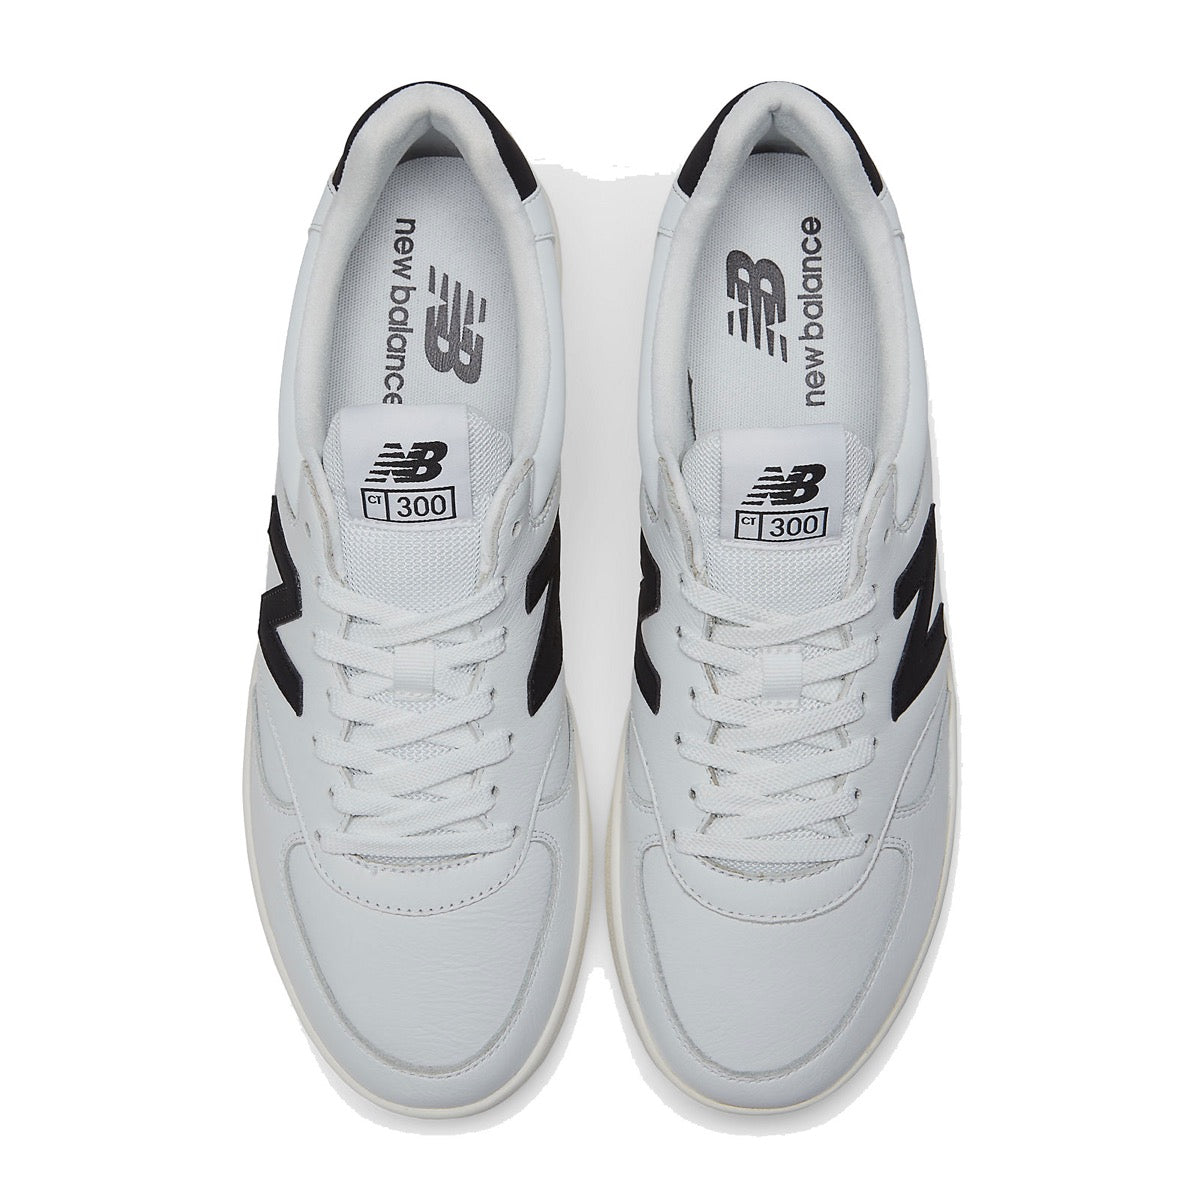 Scarpe Uomo NEW BALANCE Sneakers 300 in Pelle e Mesh colore White e Black